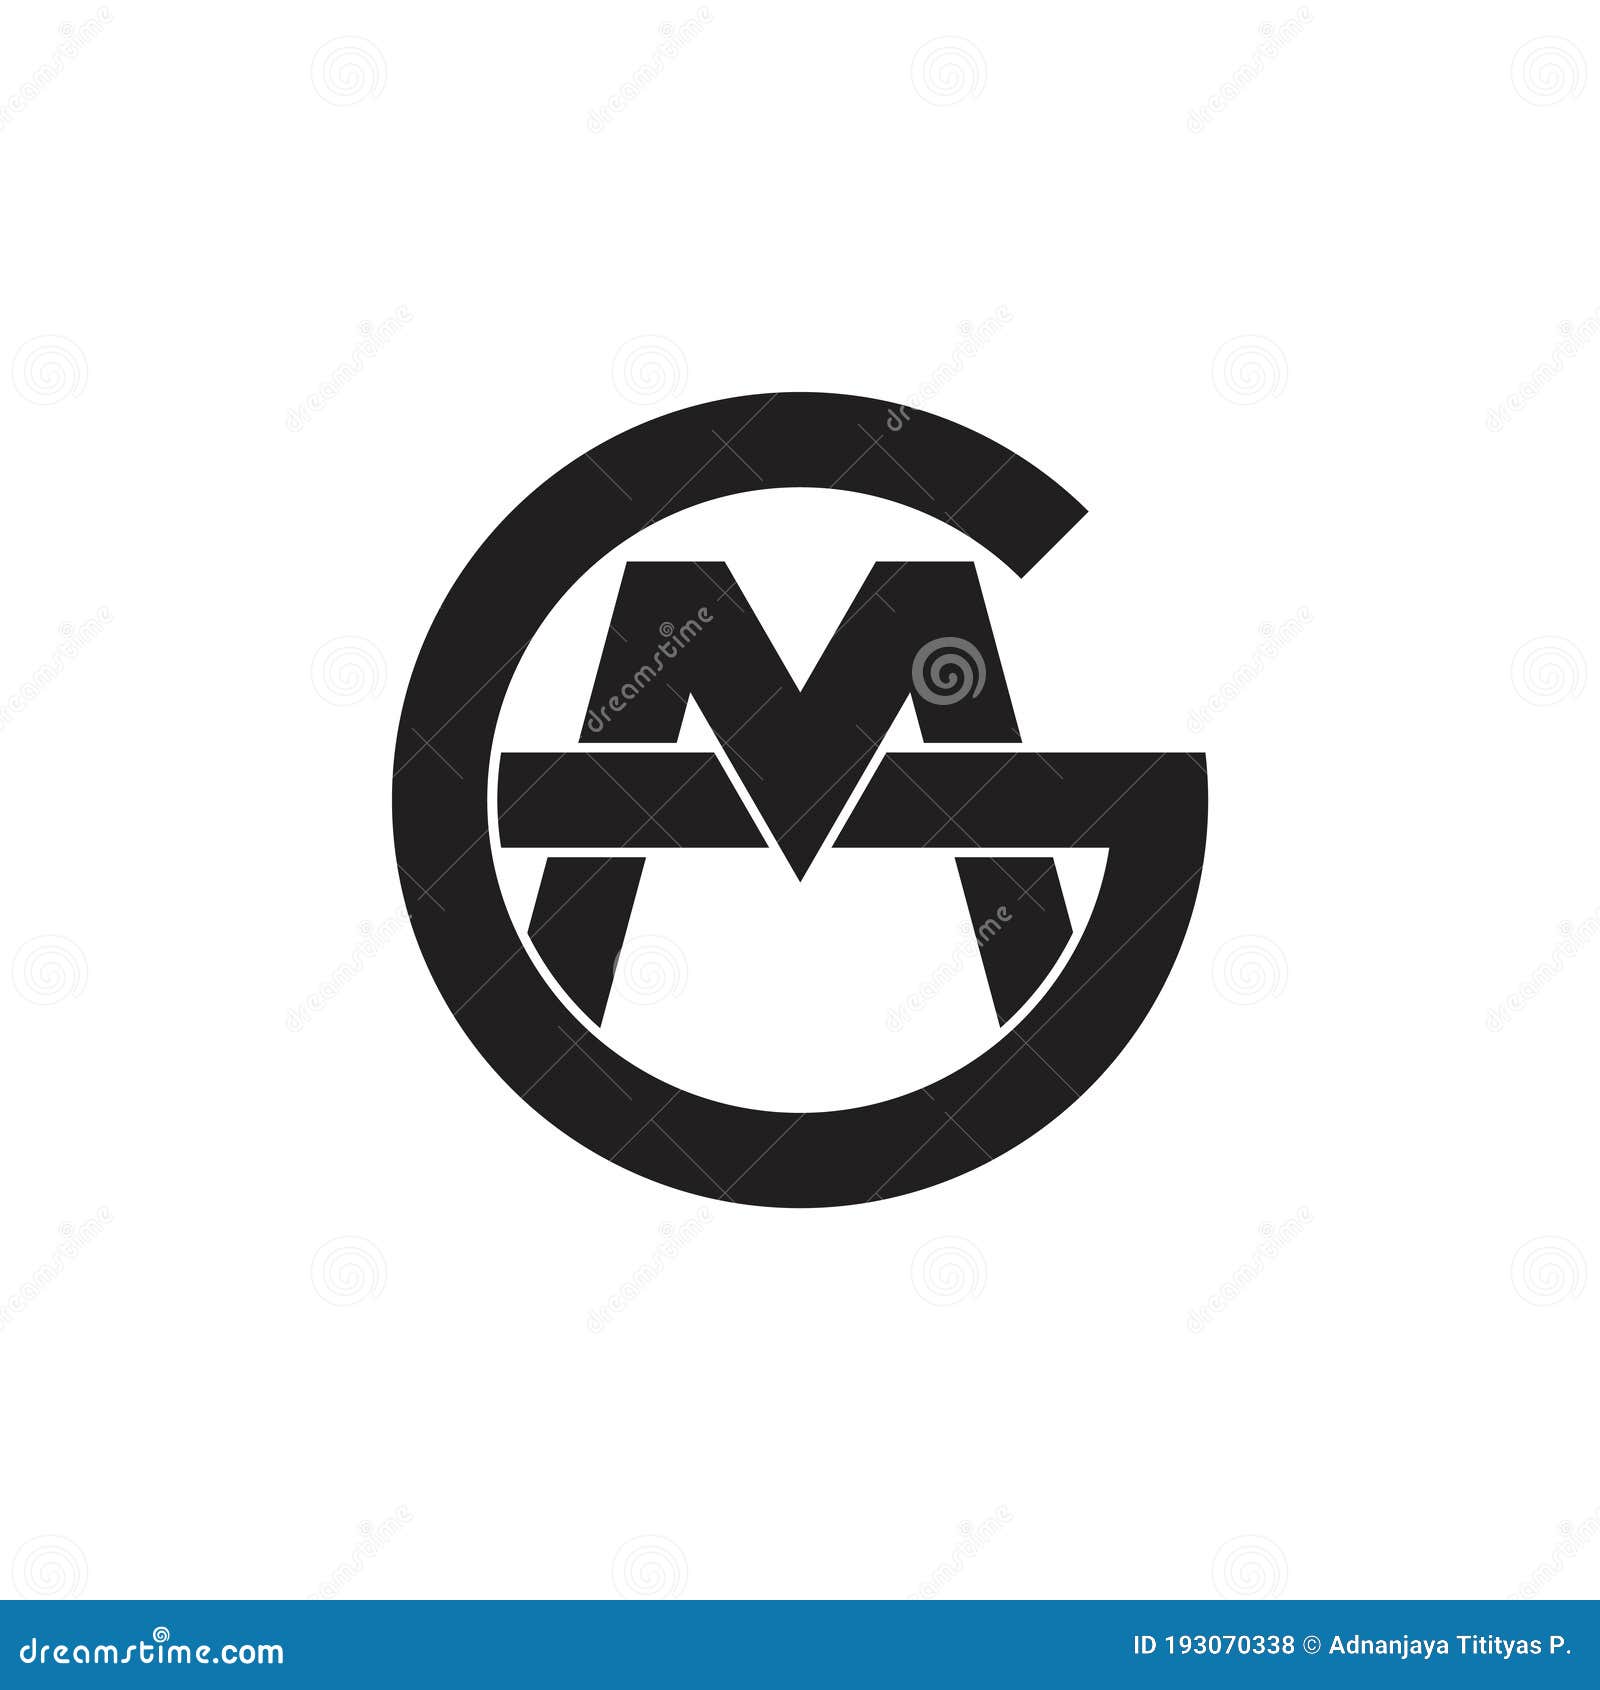 letras-gm-vinculado-al-vector-del-logotipo-de-monograma-ilustraci-n-del